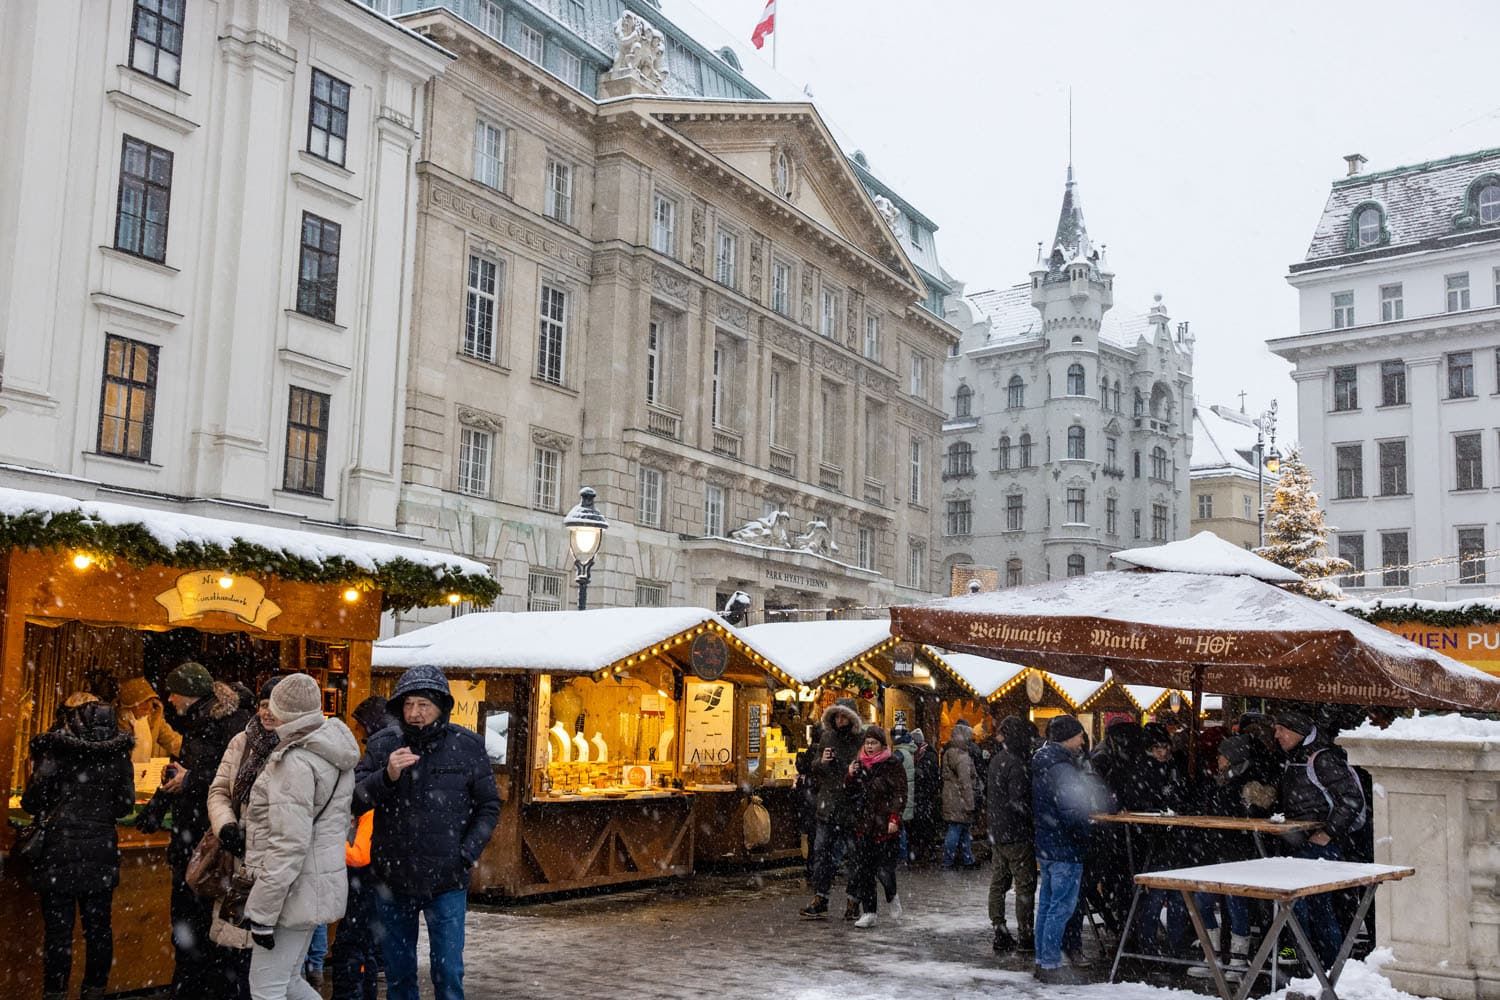 Weihnachtsmarkt am Hof Vienna